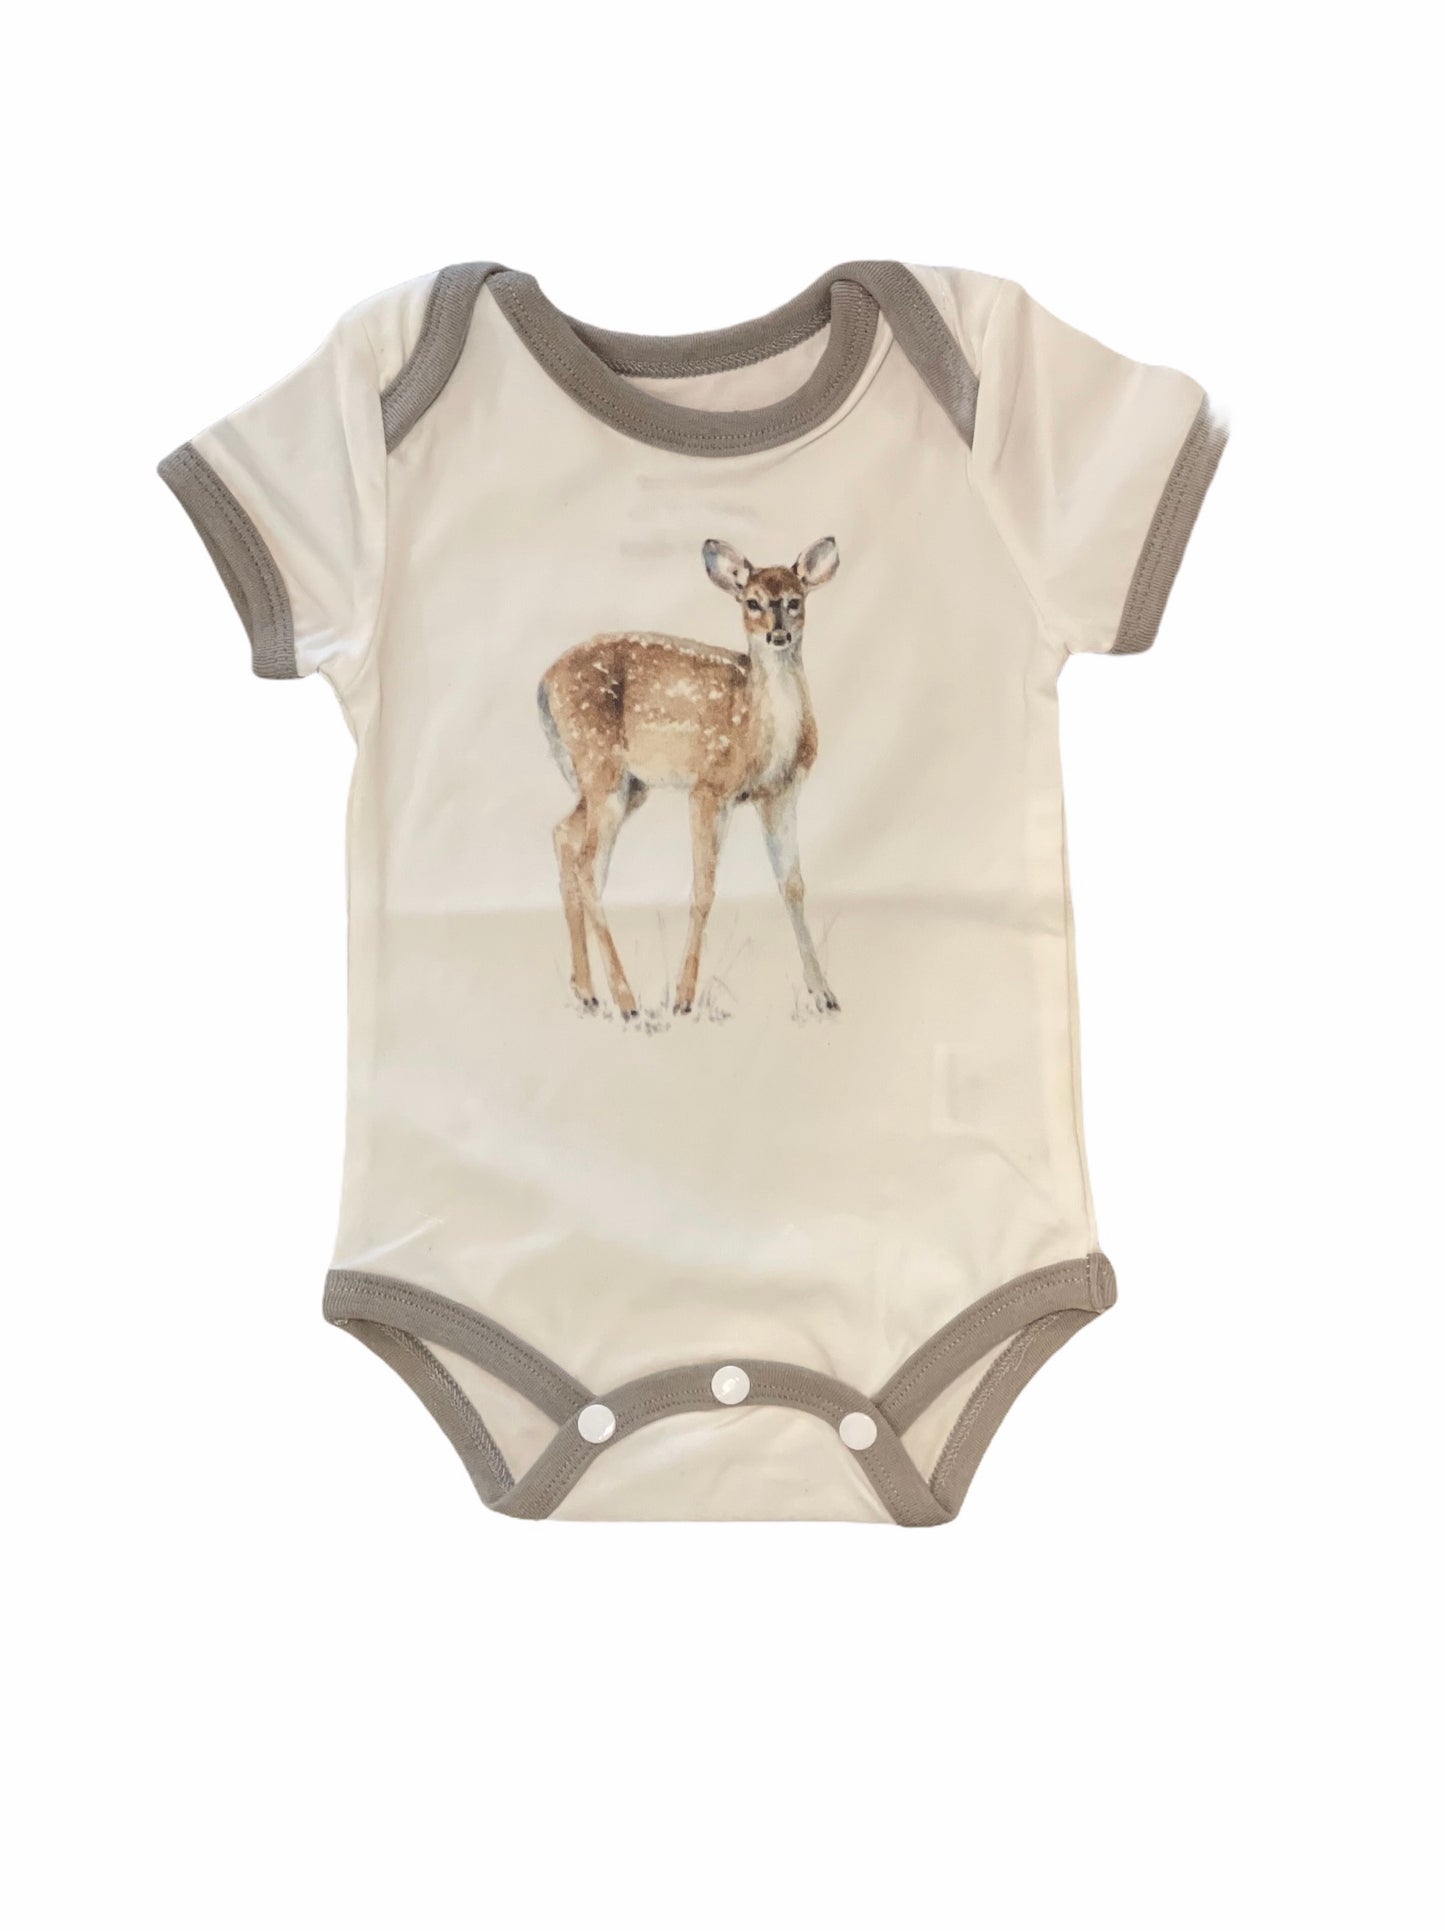 Deer Baby Bodysuit